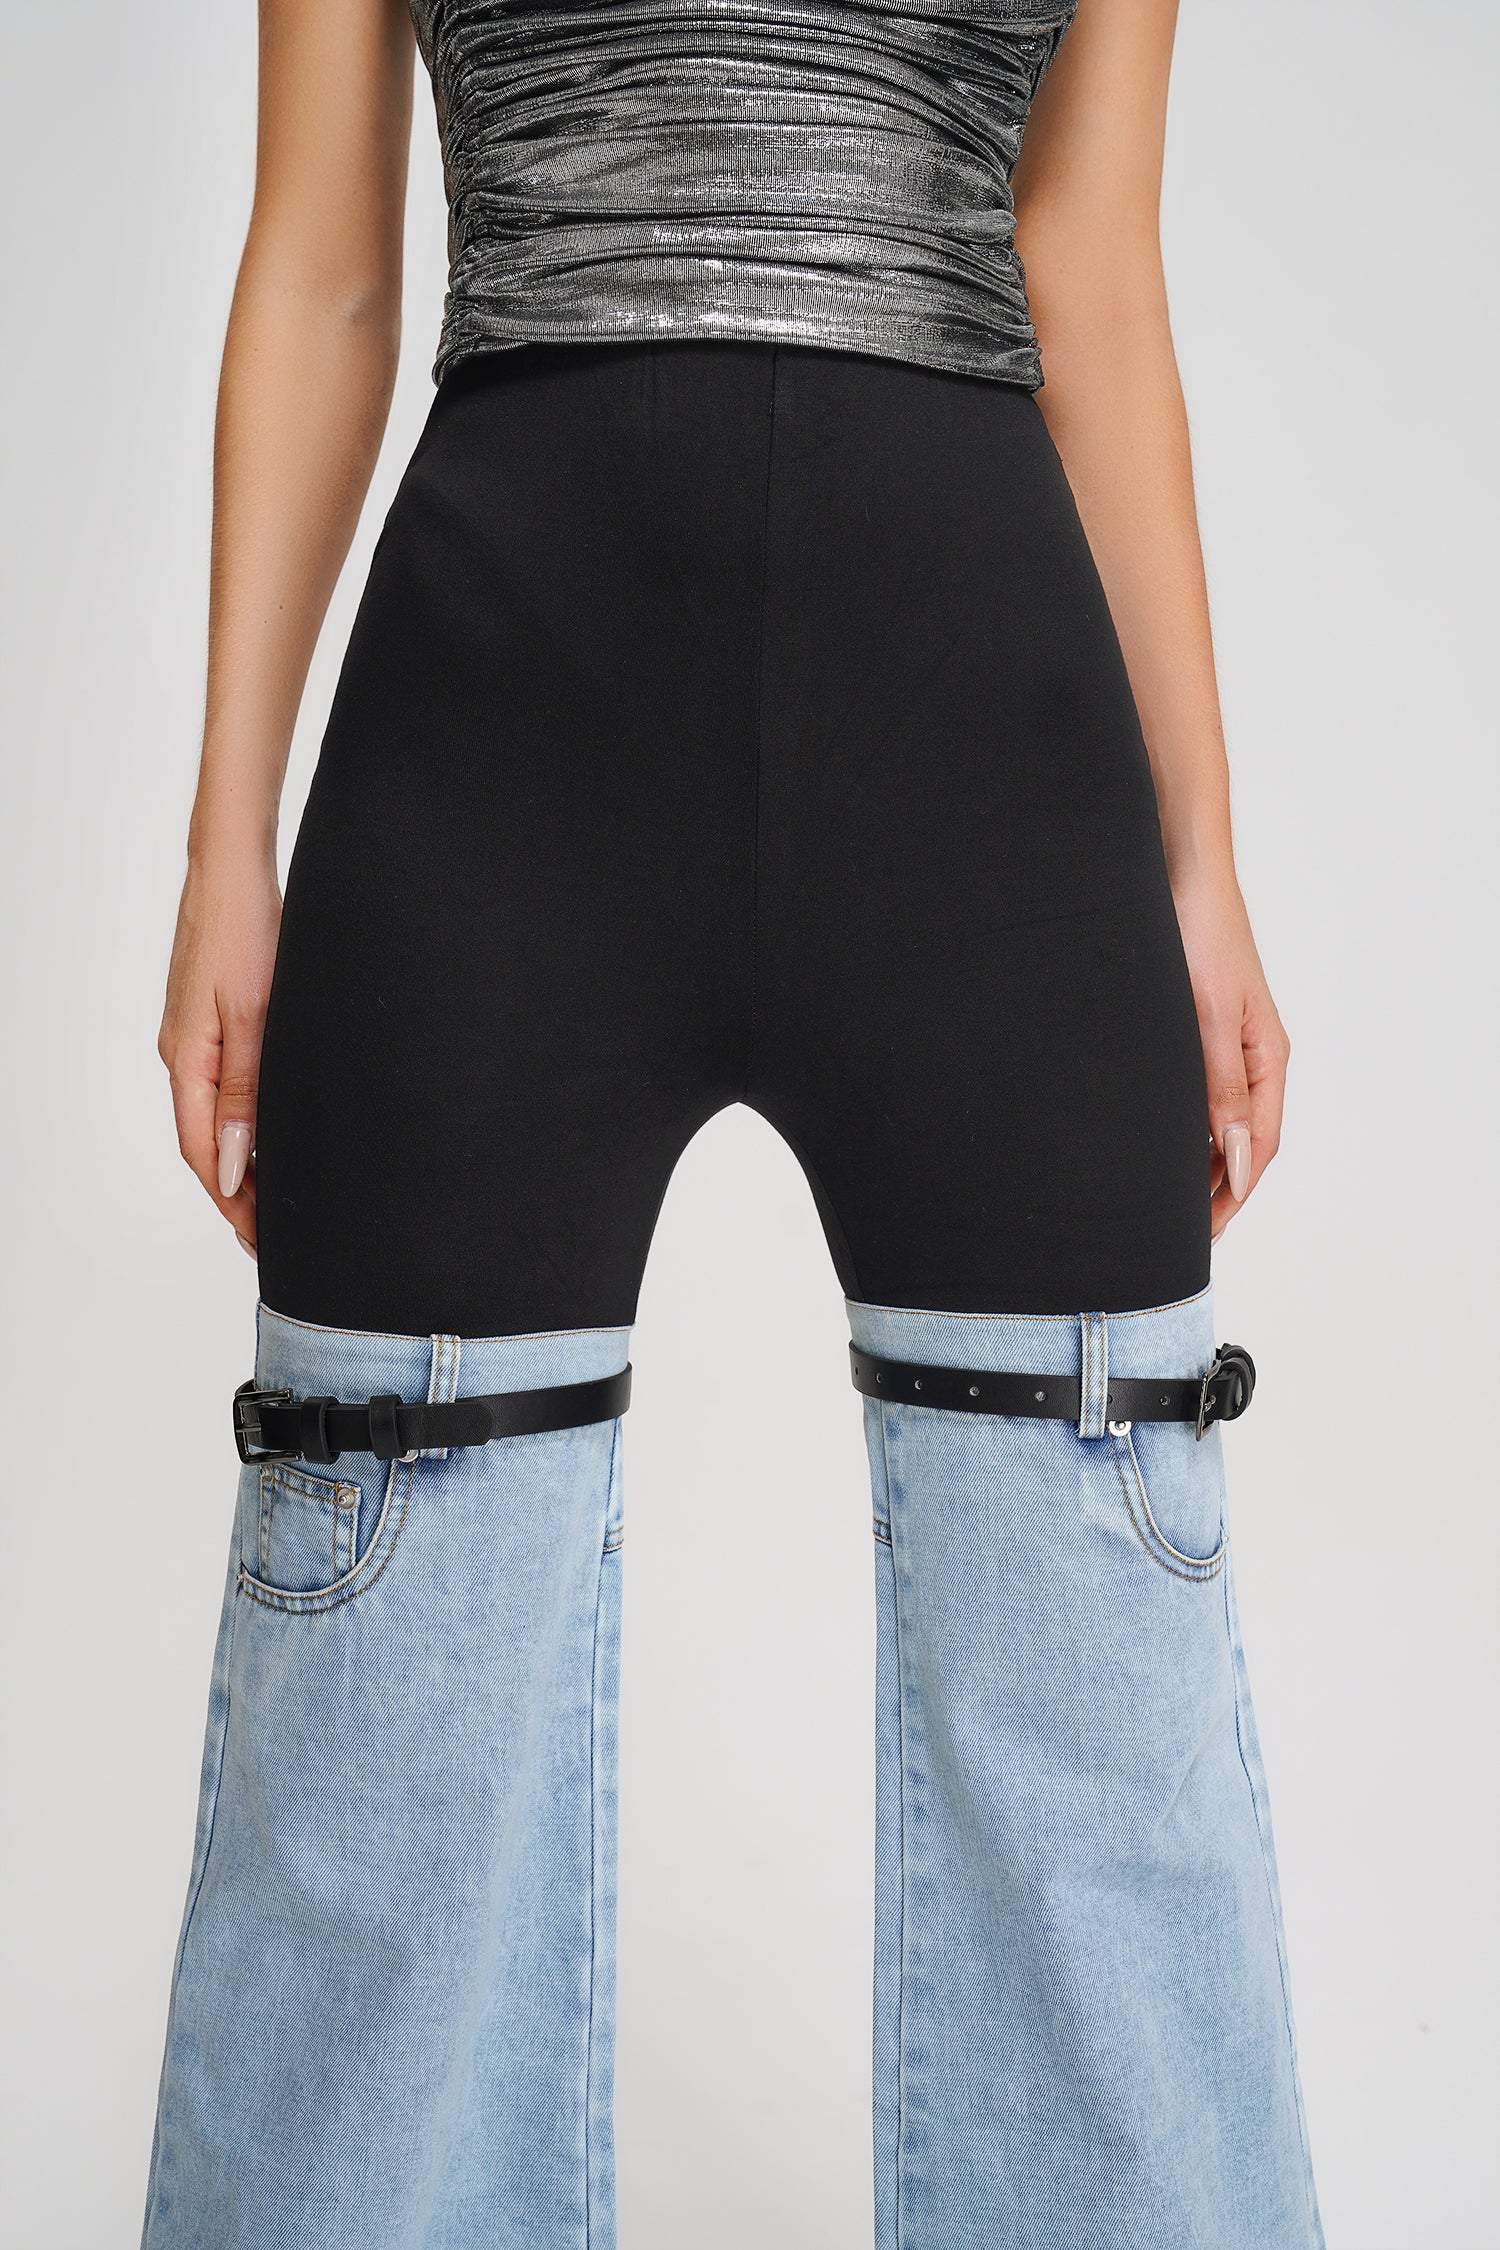 Easel patchwork denim jeans – Bella Vita Unique Boutique